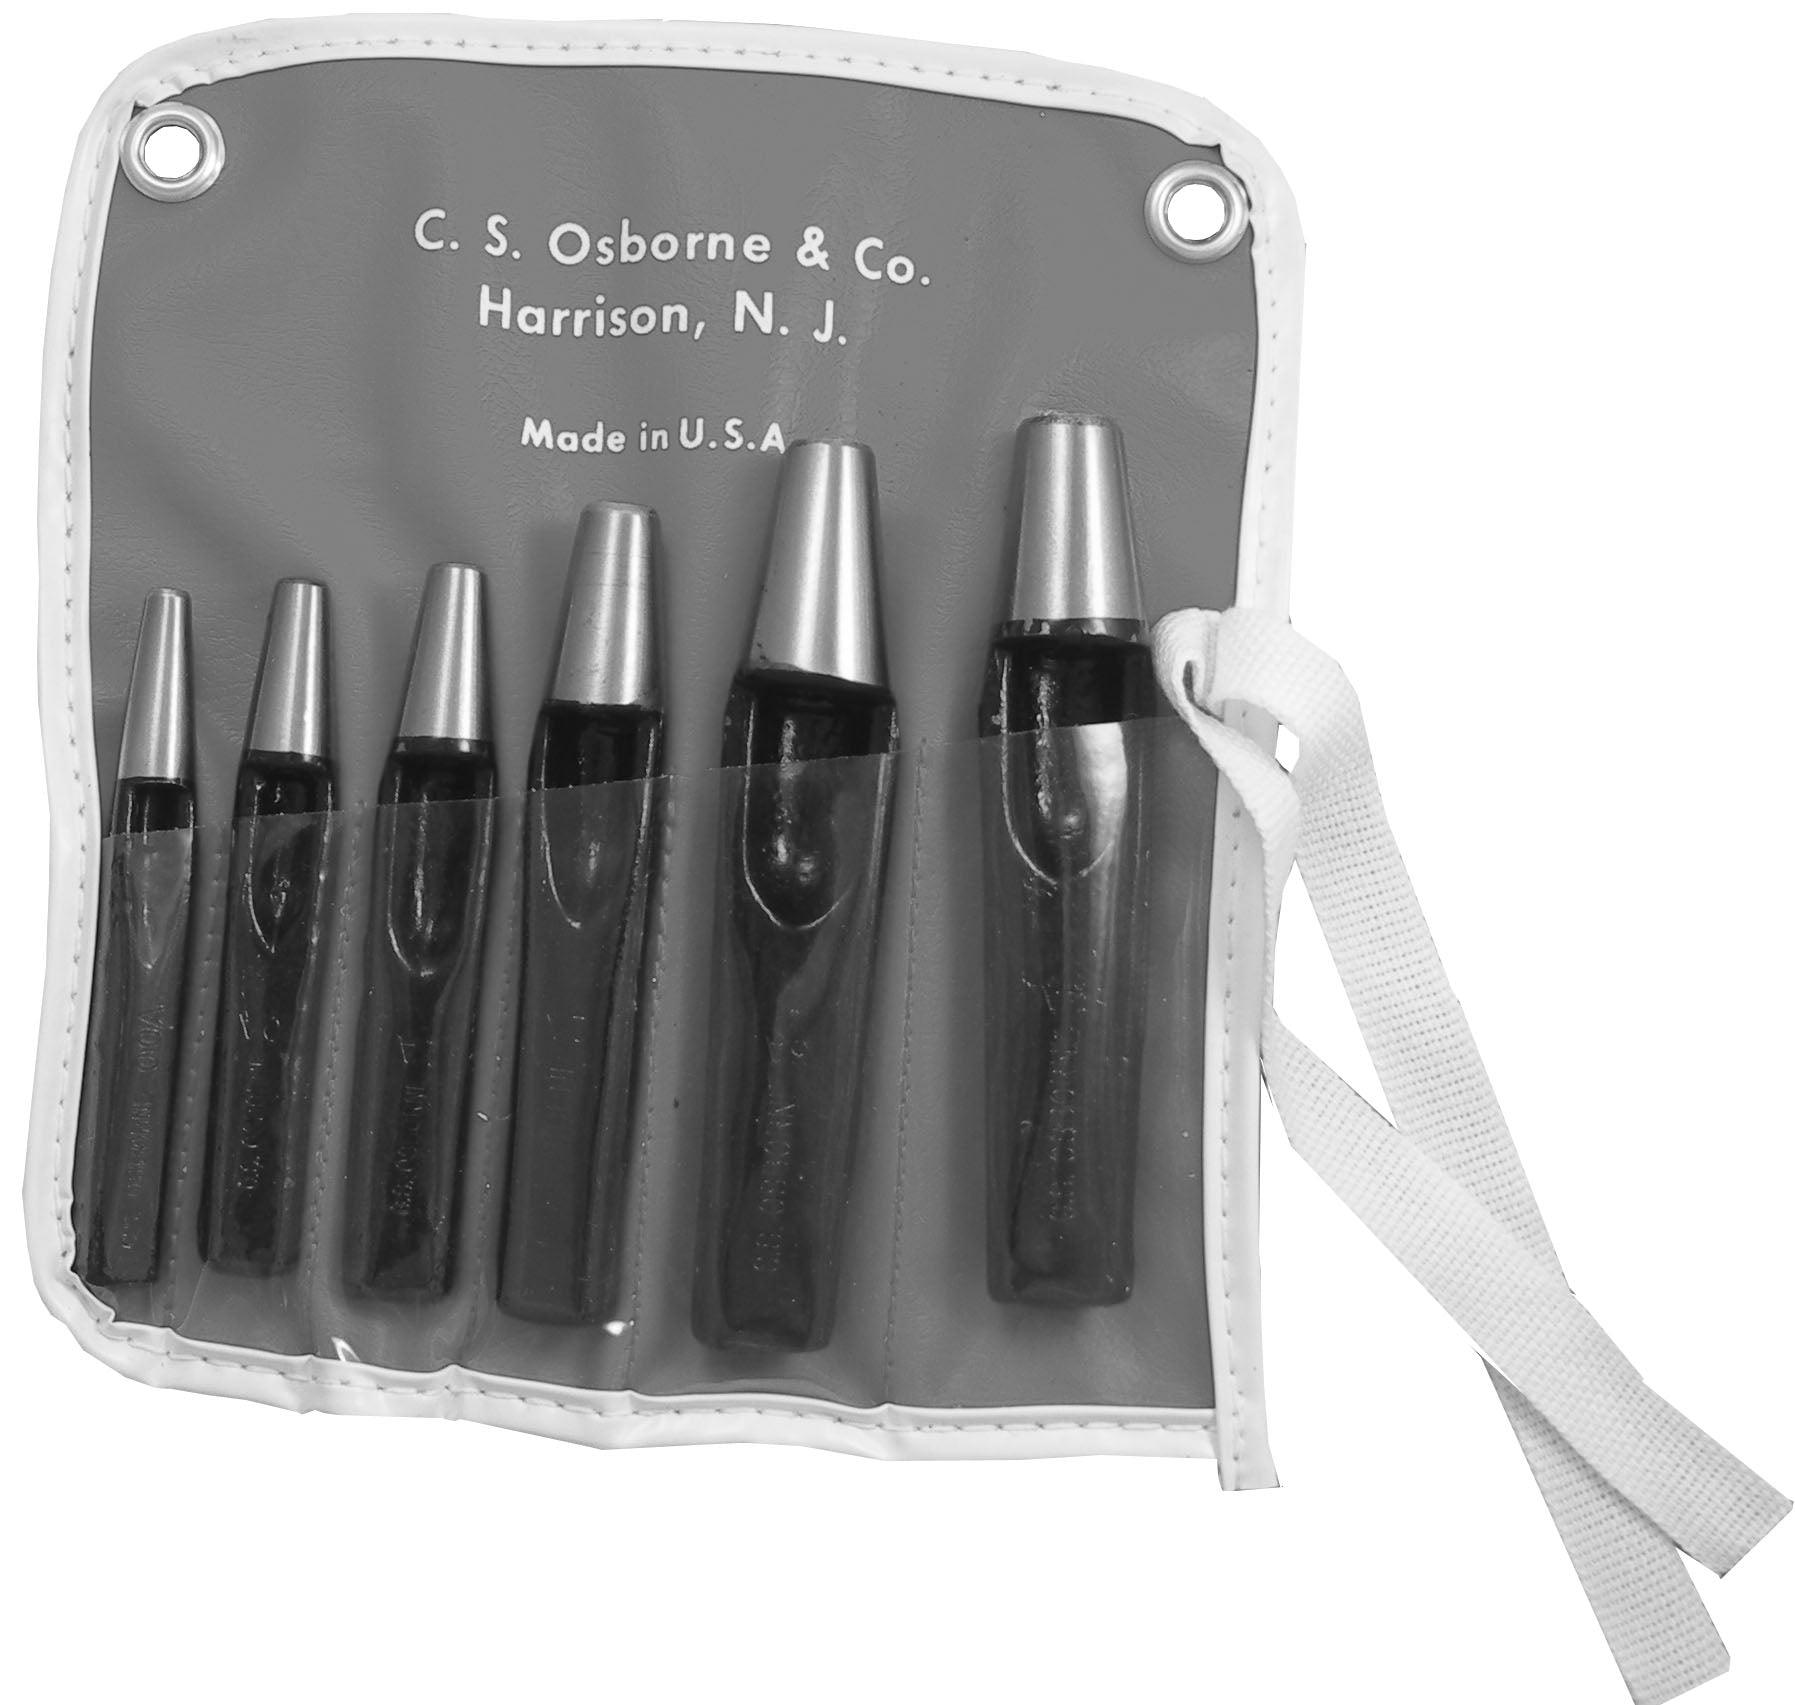 C.S. Osborne Grommet Hole Cutter Set - Alan Richard Textiles, LTD C.S. Osborne, C.S. Osborne Grommet Inserting Die, C.S. Osborne Grommet Kits